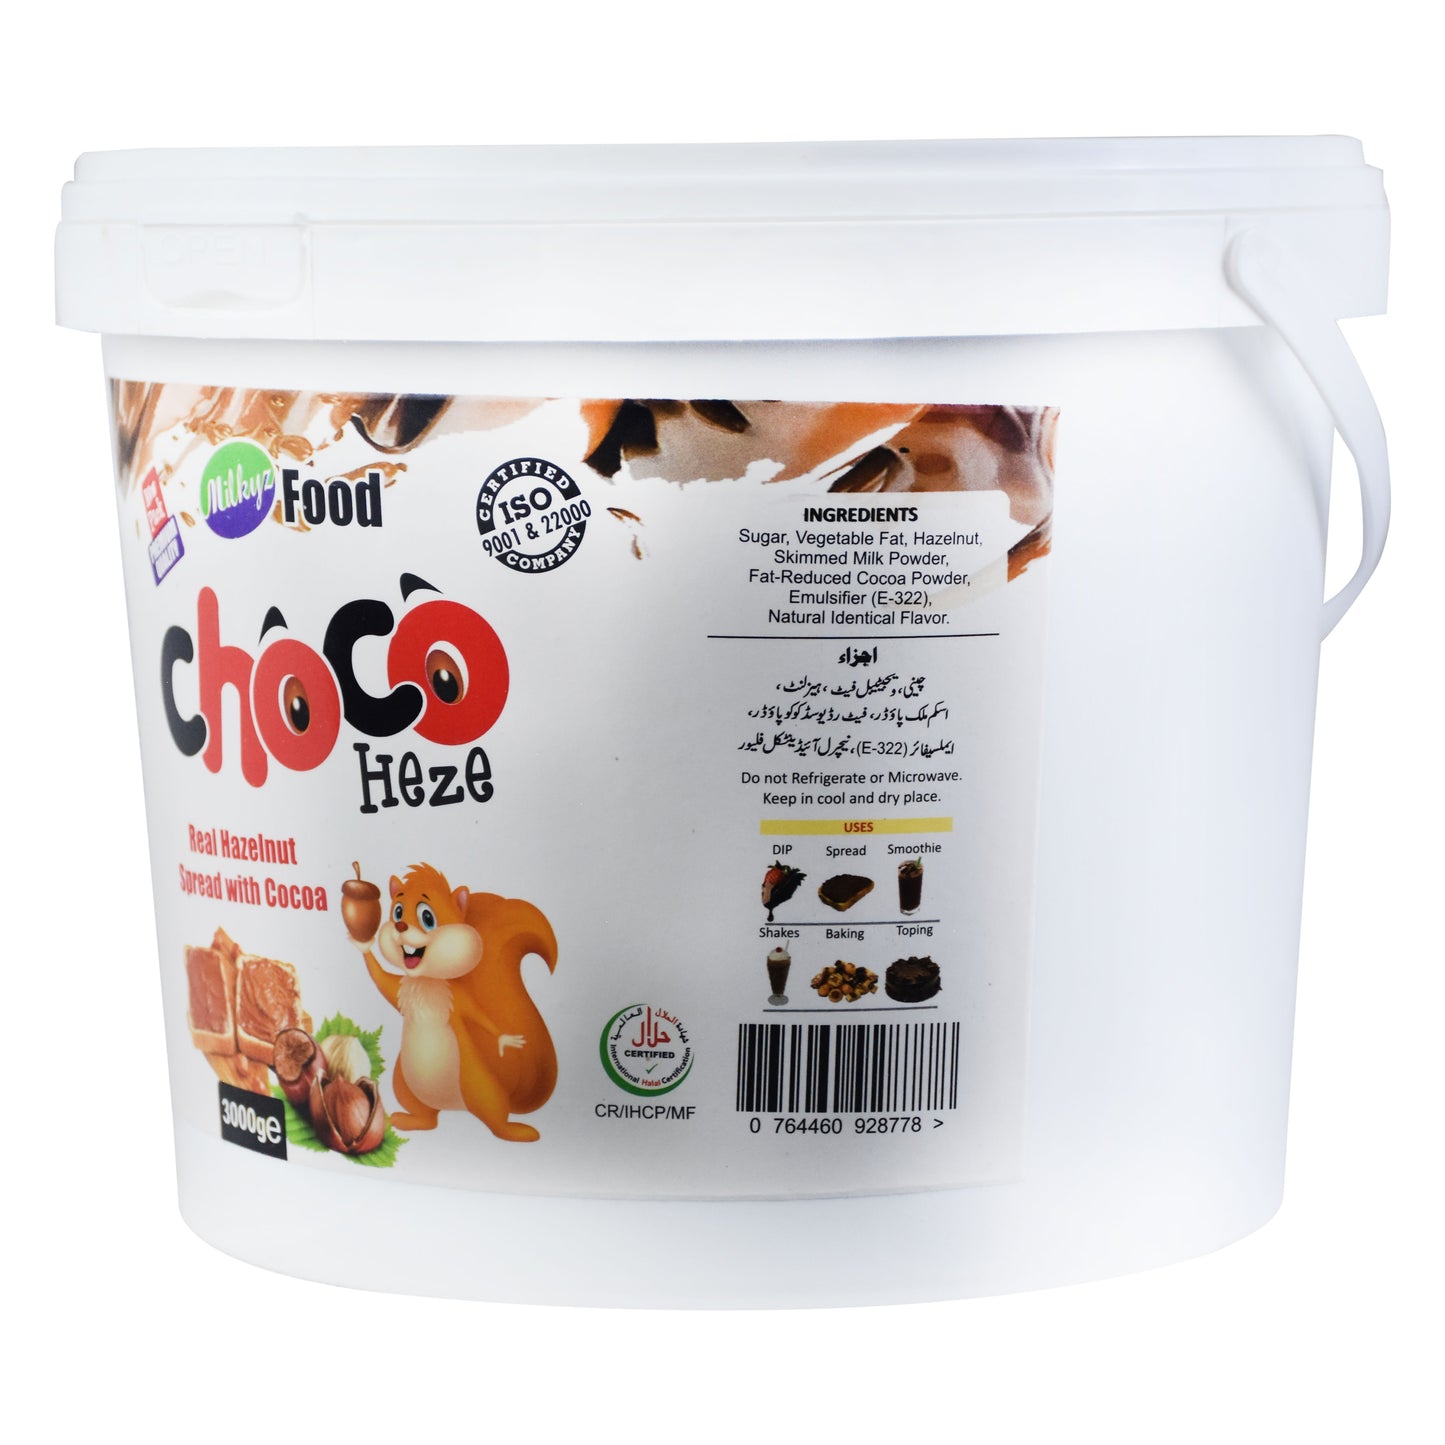 Milkyz Food Choco Heze Real Hazelnut Spread With Cocoa 3kg Bucket